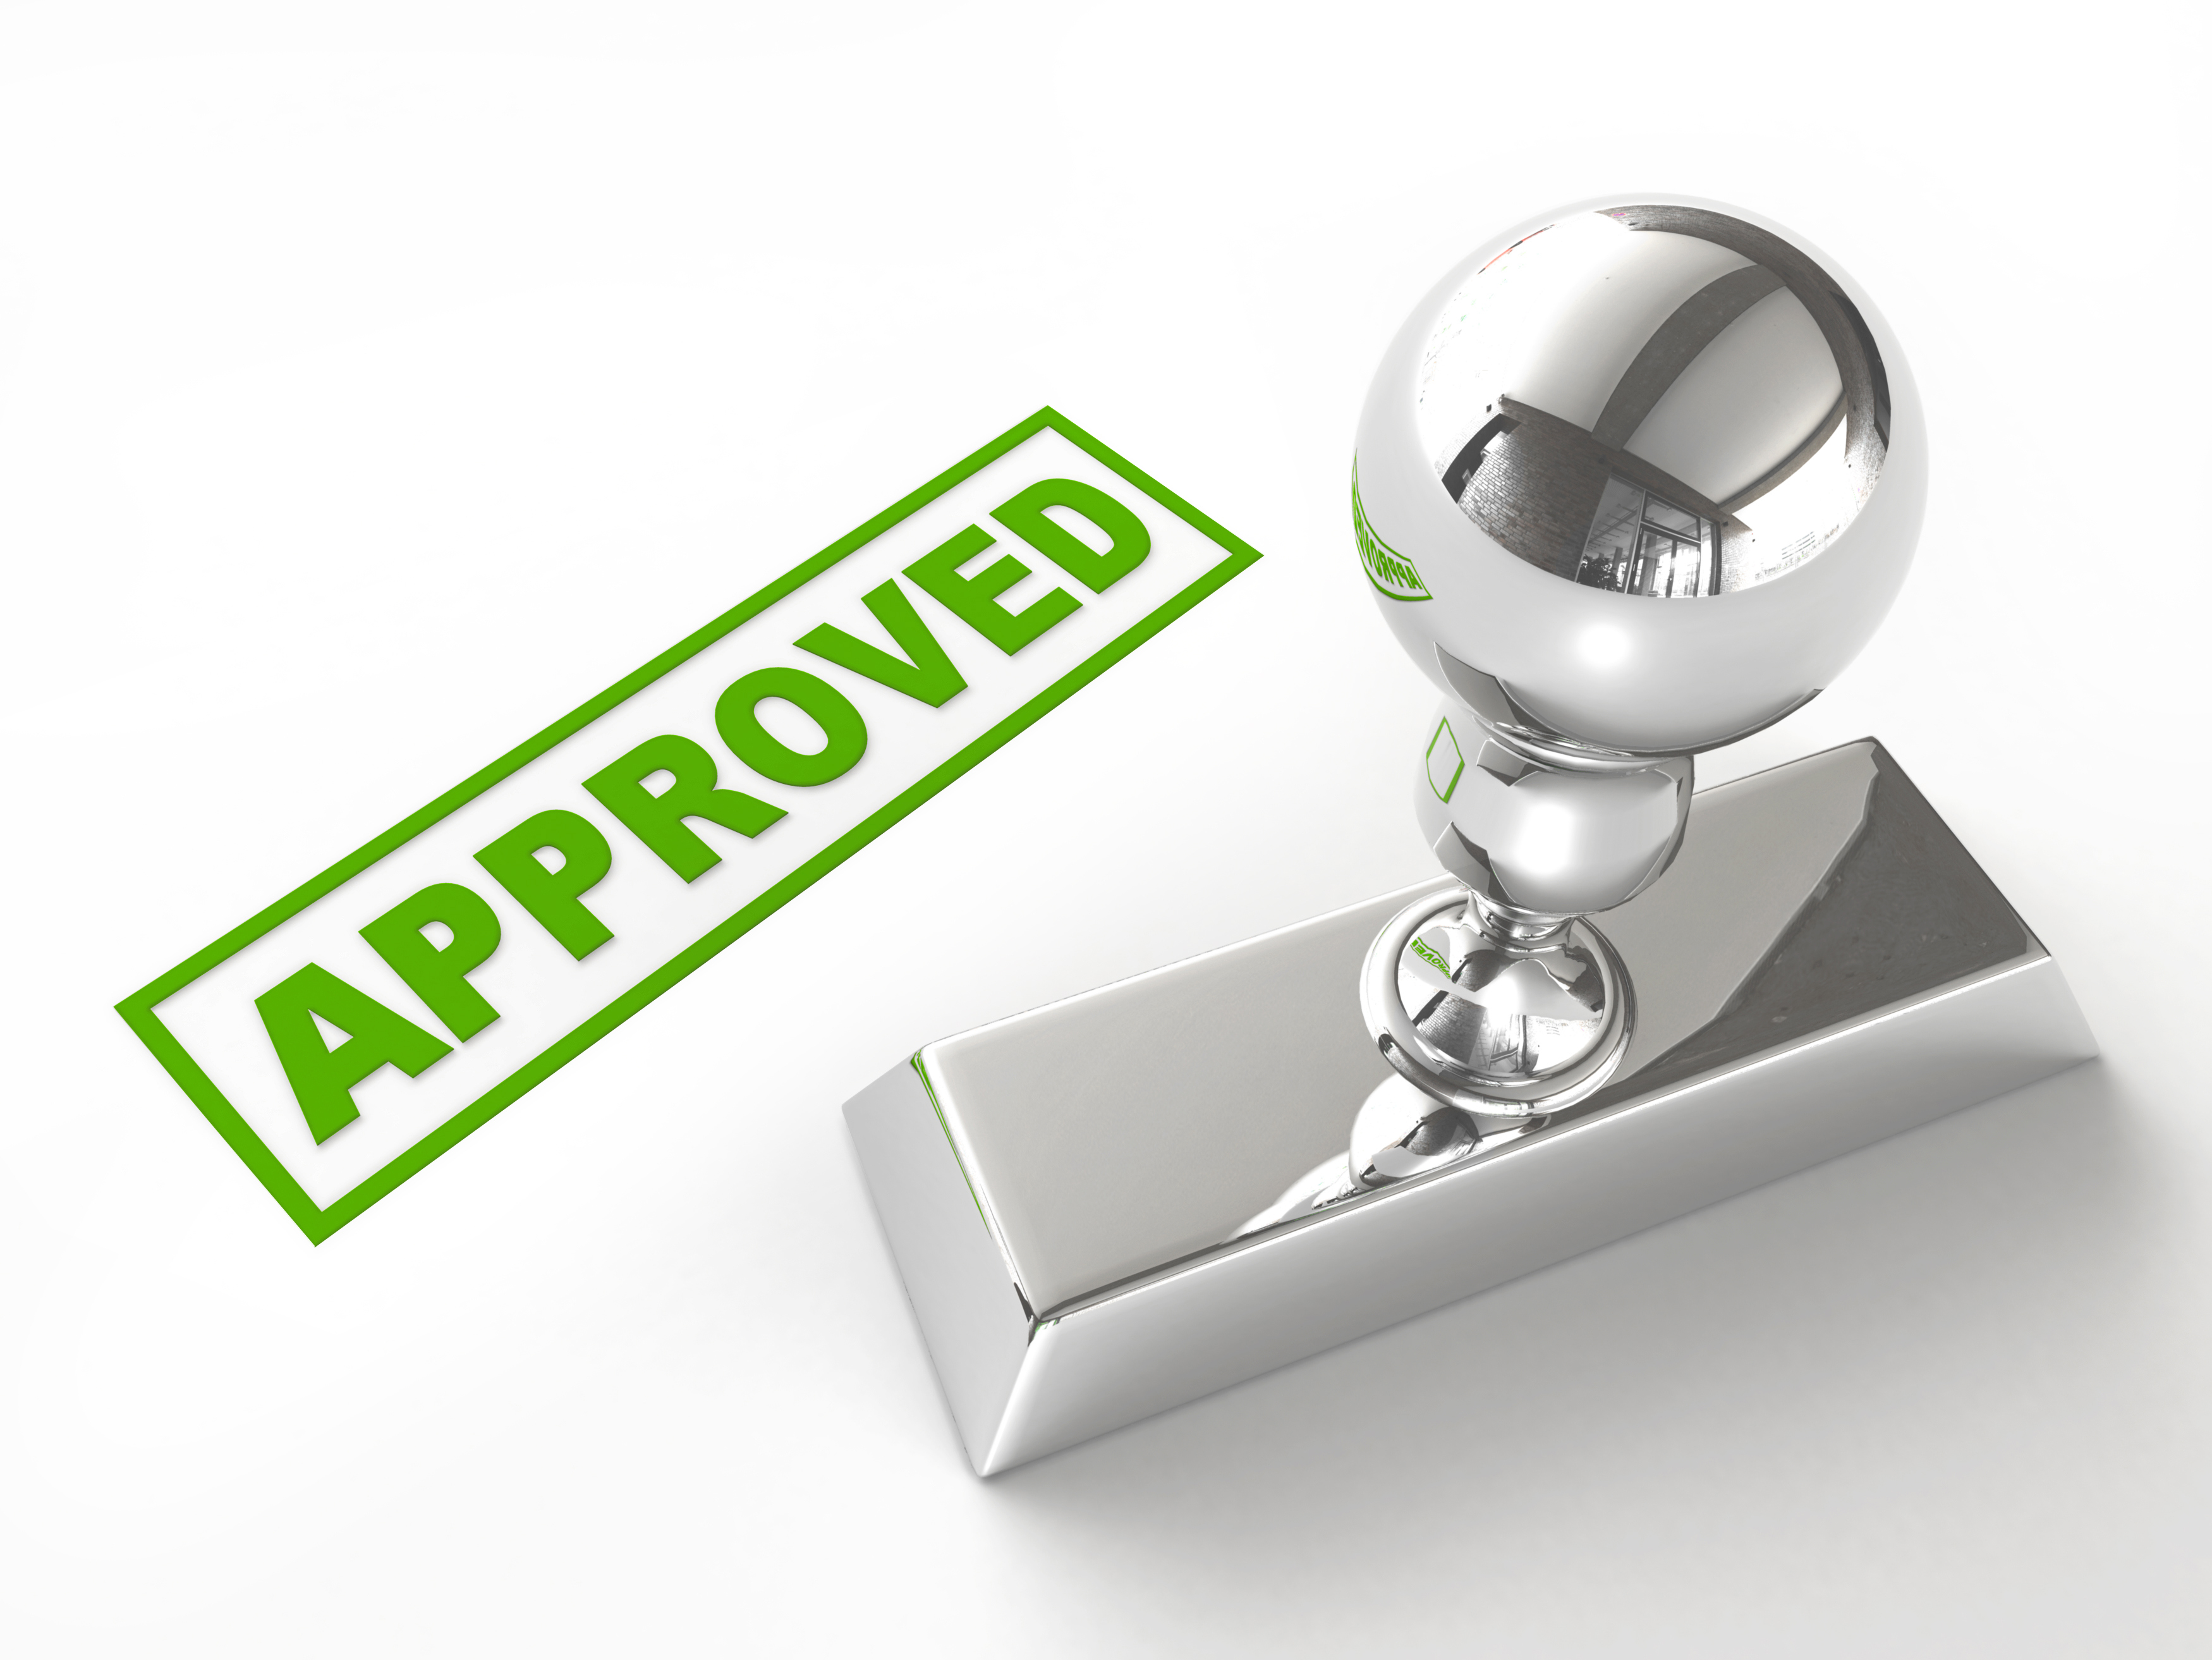 SBA Loan approval rate